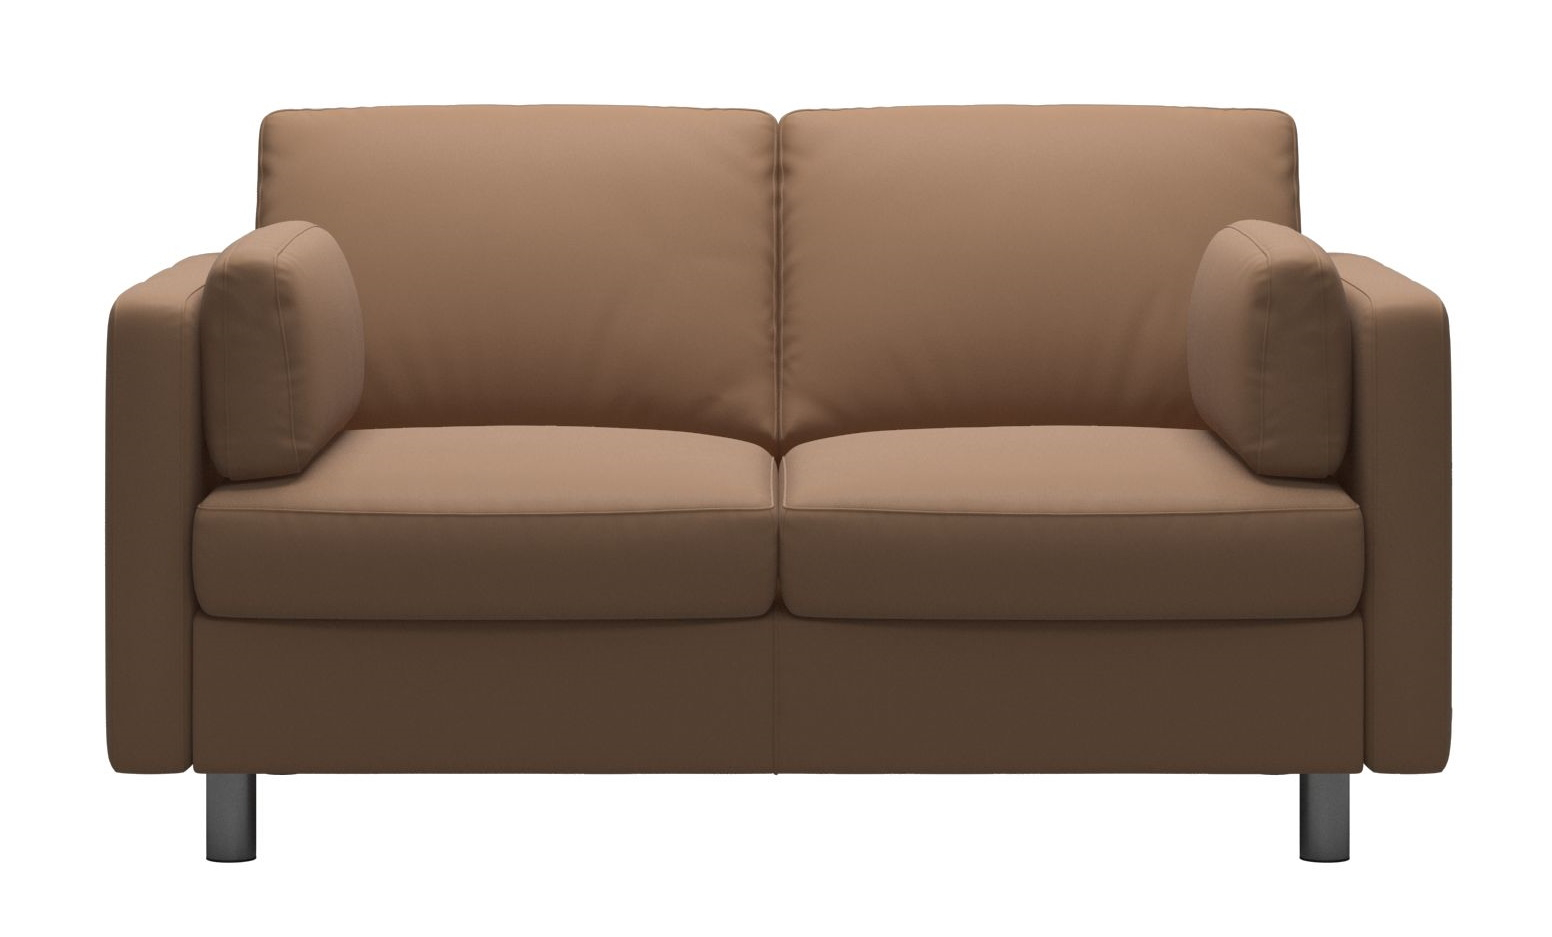 Canapea cu 2 locuri Stressless Emma E600 Classic picioare metalice 11cm piele Batik Latte